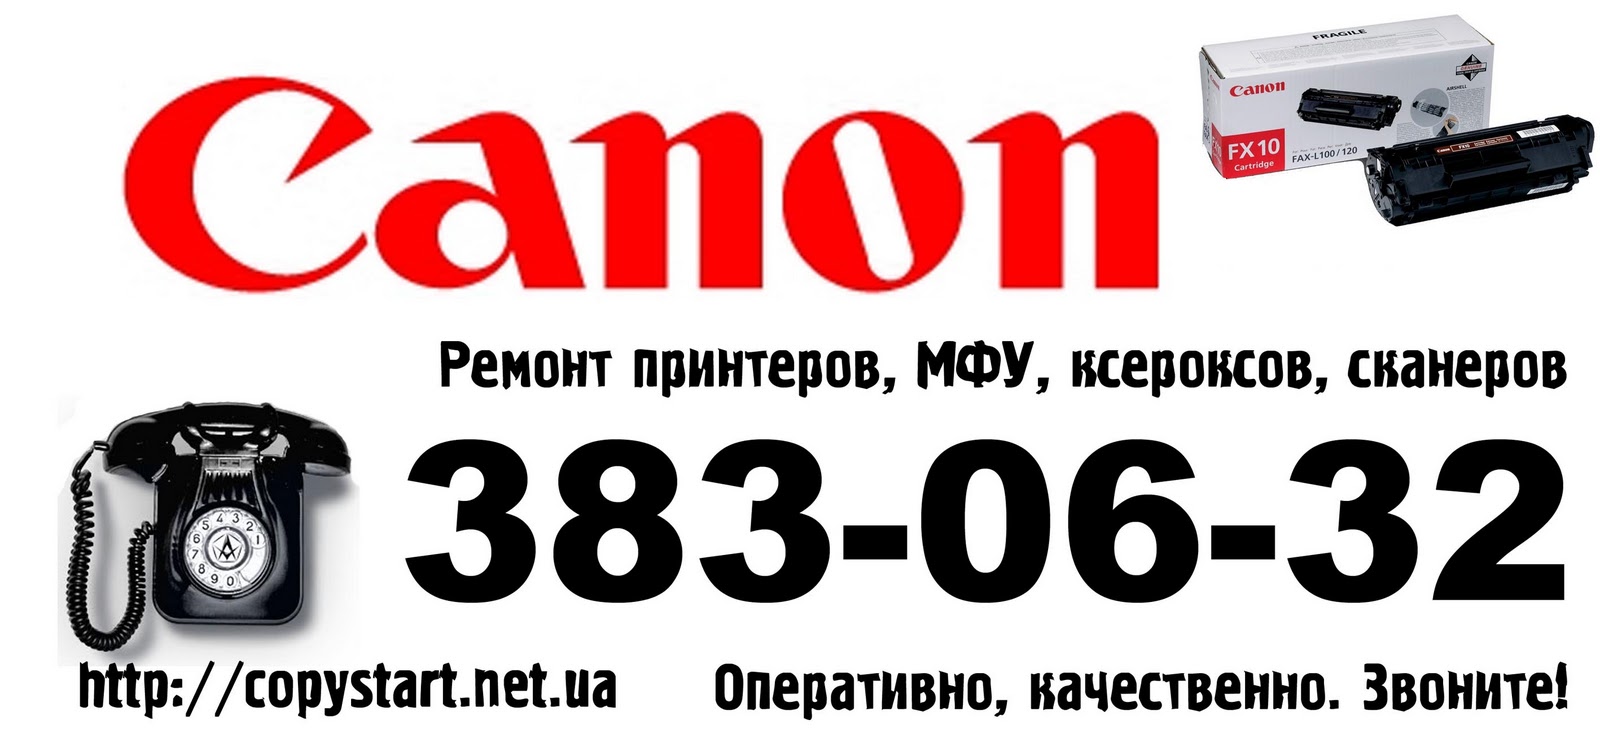 Canon сервисные центры canon support ru. Сервисный центр Canon. Сервисный центр НР. Canon принтер сервисный центр в СПБ адреса.